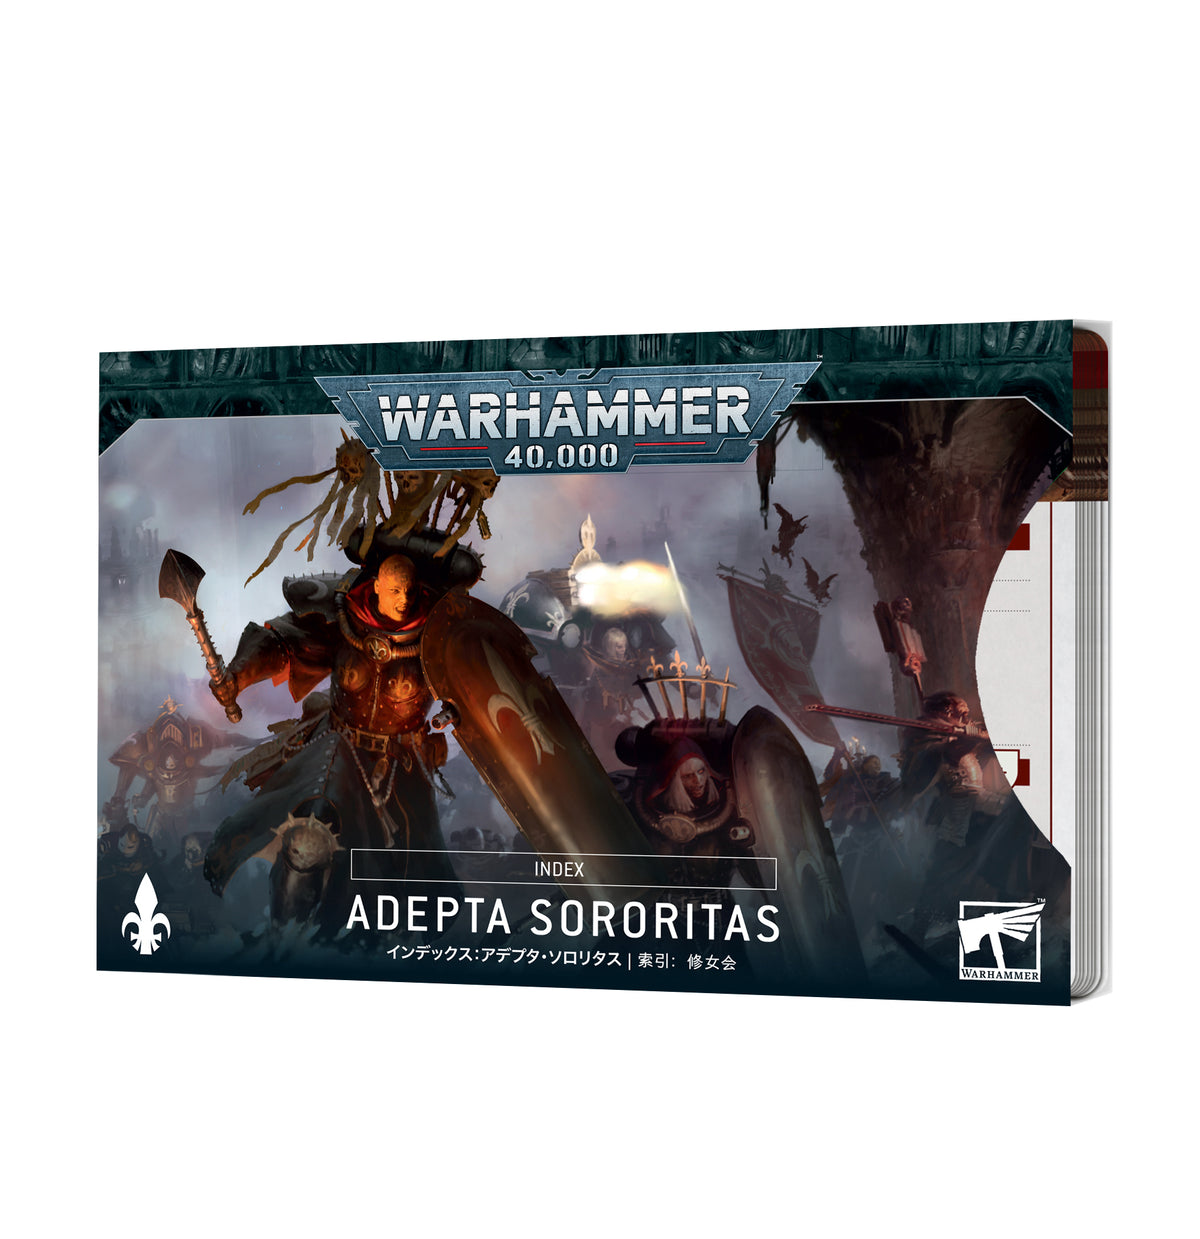 Index Cards: Adepta Sororitas (Warhammer 40000)